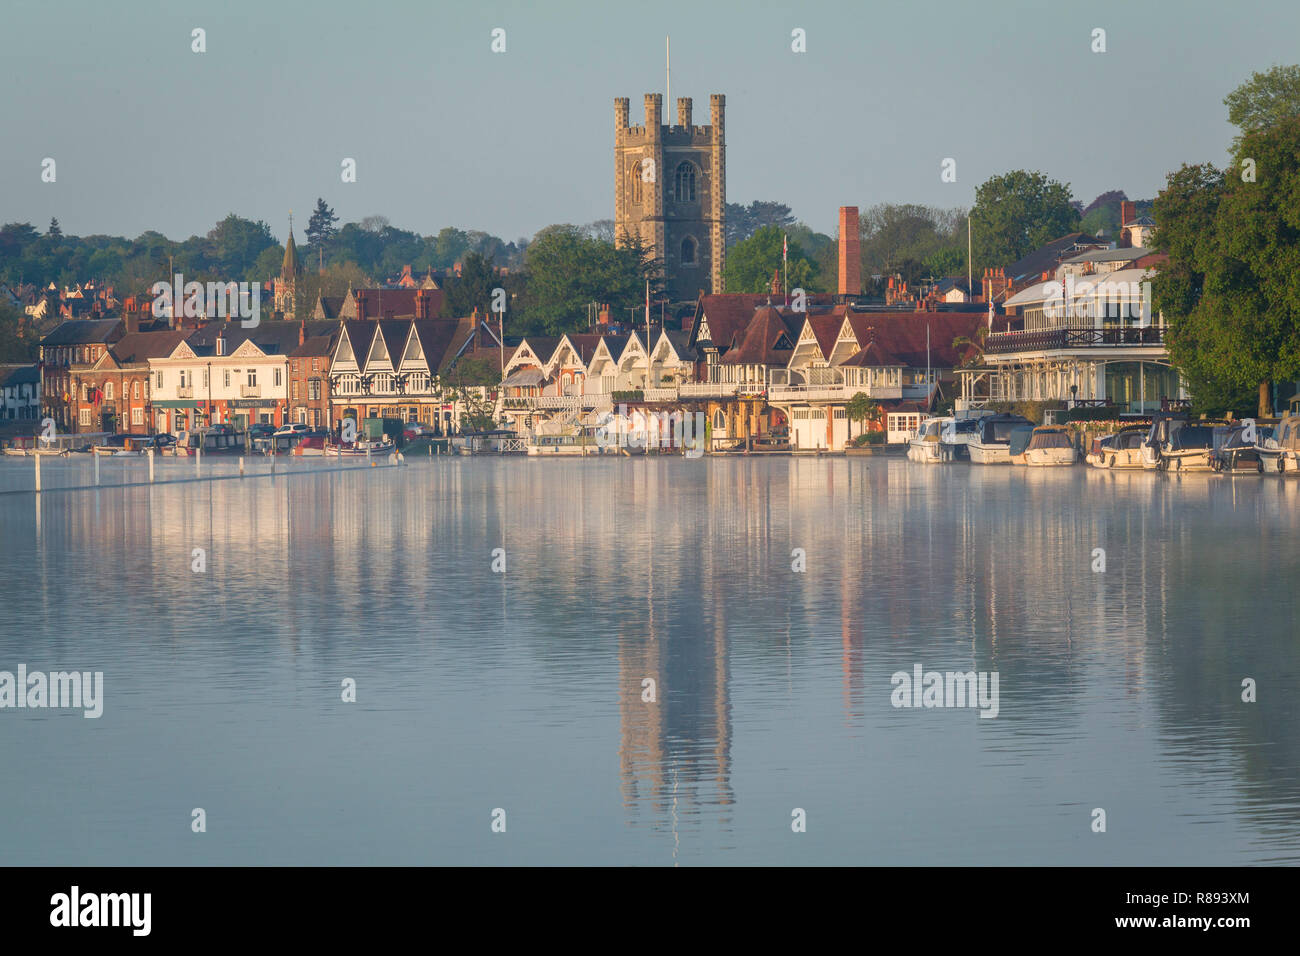 La pittoresque ville historique de Thameside de Henley-on-Thames, Oxfordshire, vu de l'autre côté de la Tamise avec l'église de la Vierge Marie dans le centre Banque D'Images